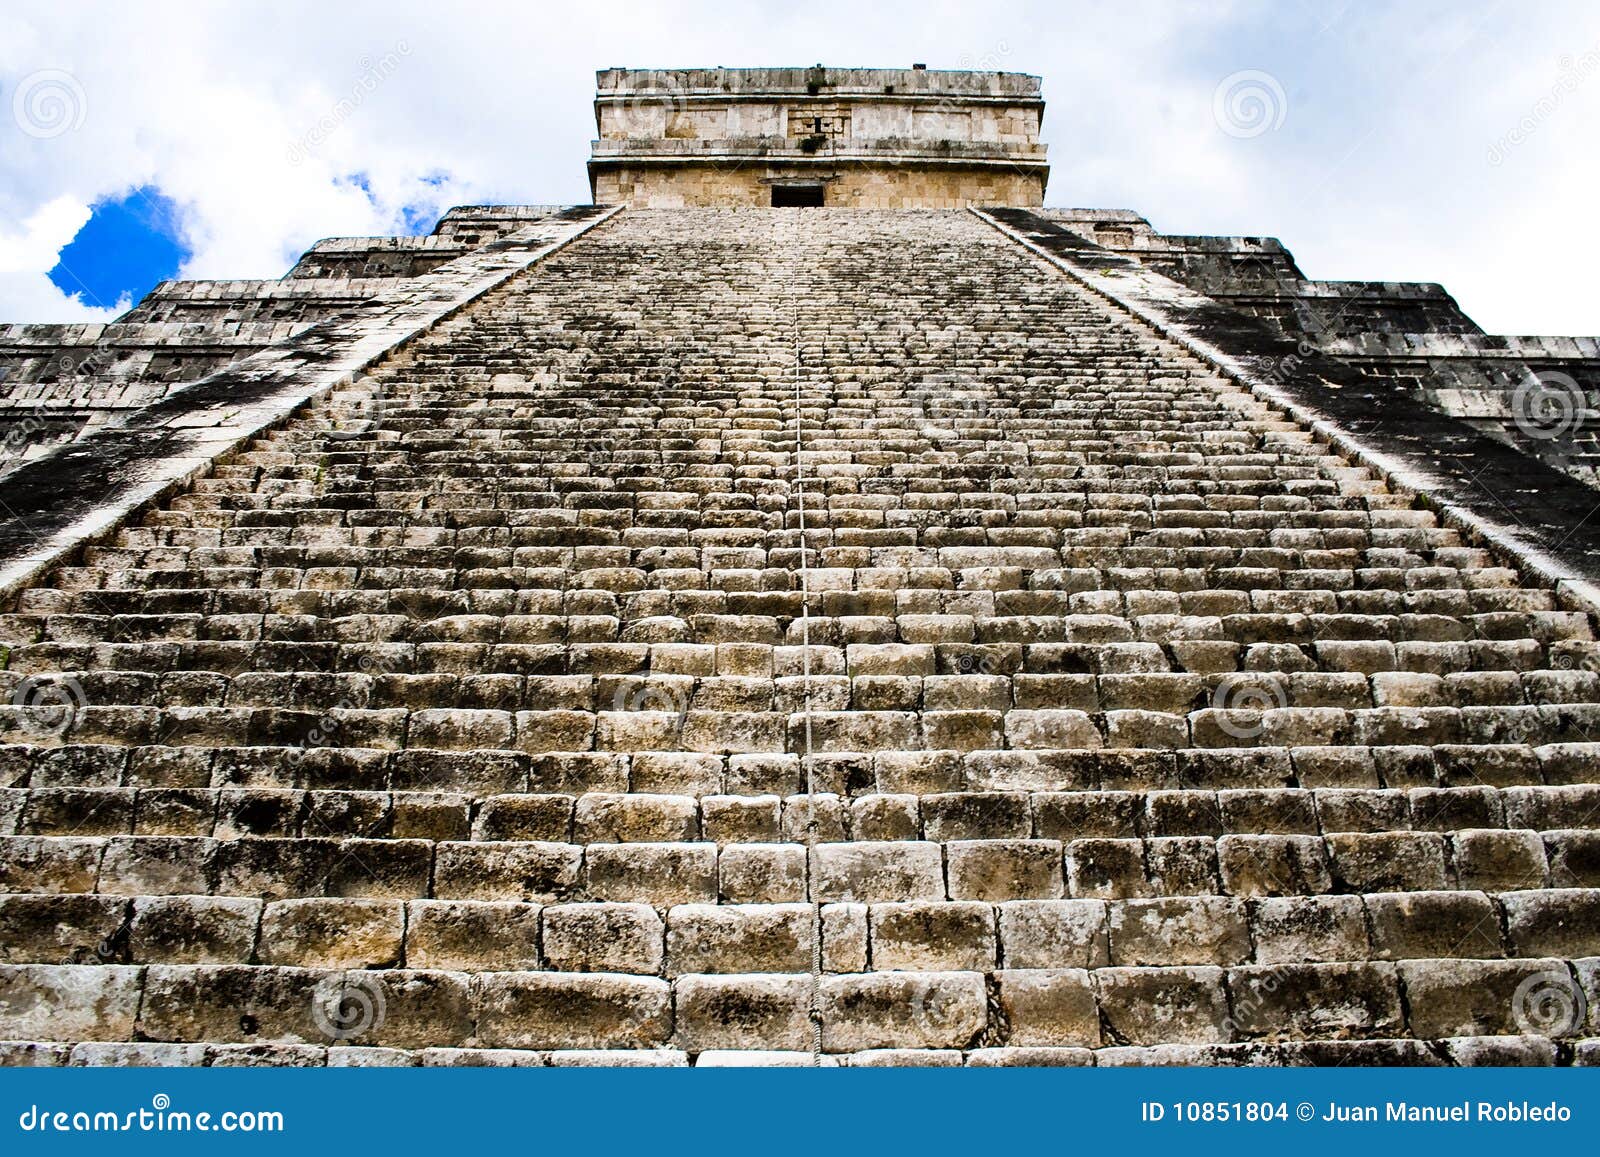 pyramid of chichen itza, mexico